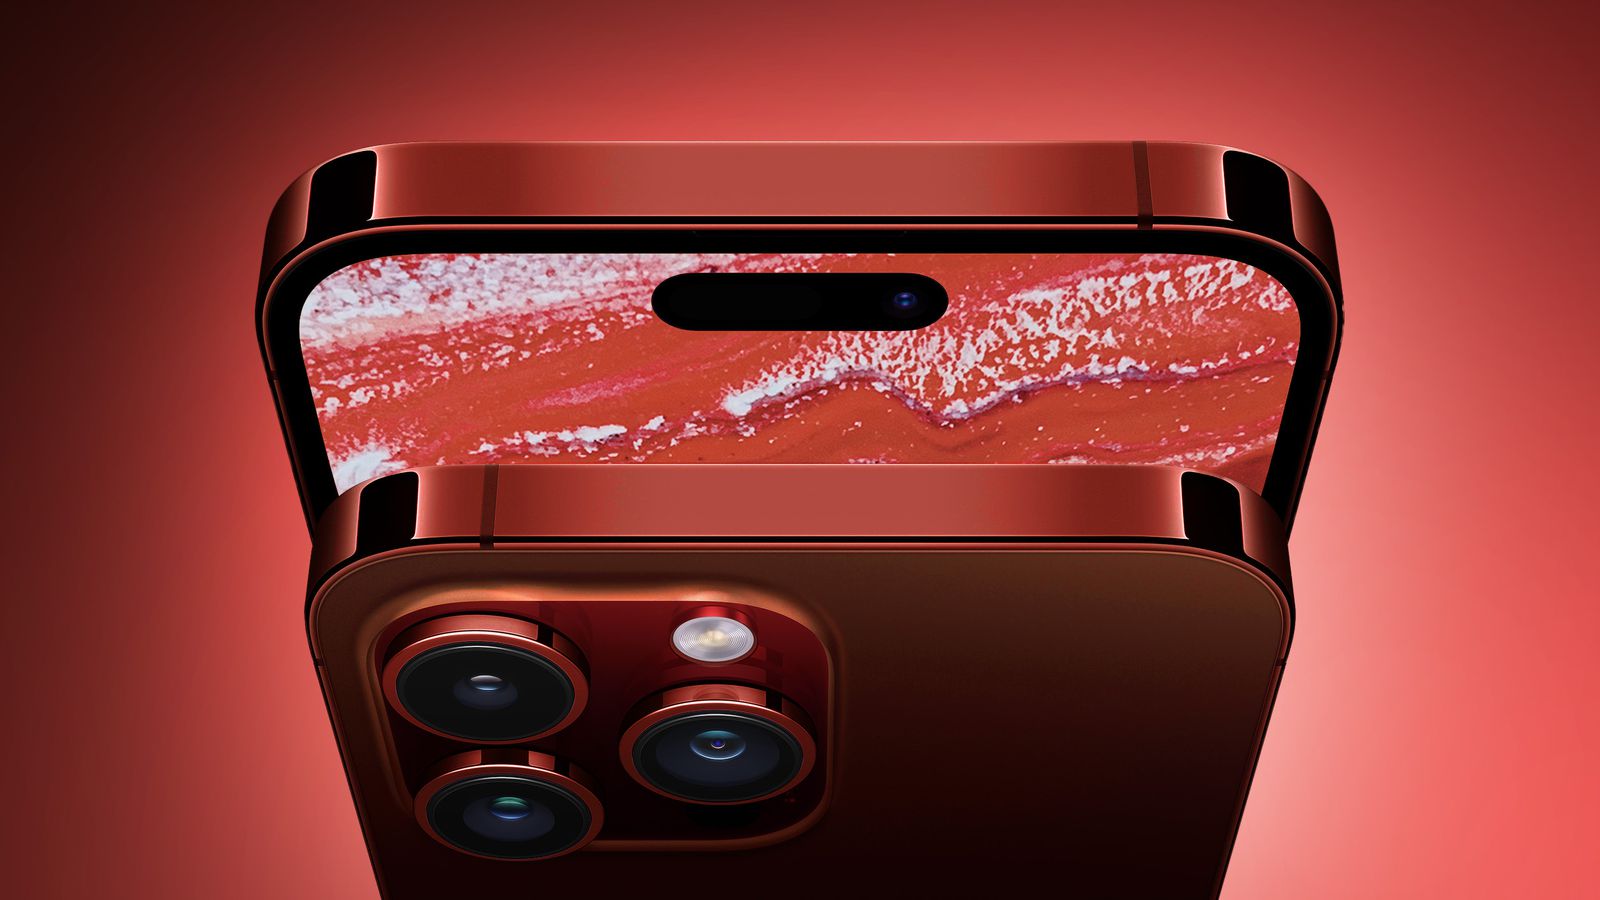 ลืออีกสีแดง "Crimson" คือชื่อสีใหม่ของ iPhone 15 Pro ถ้ามาจริงพร้อมเสียเงิน